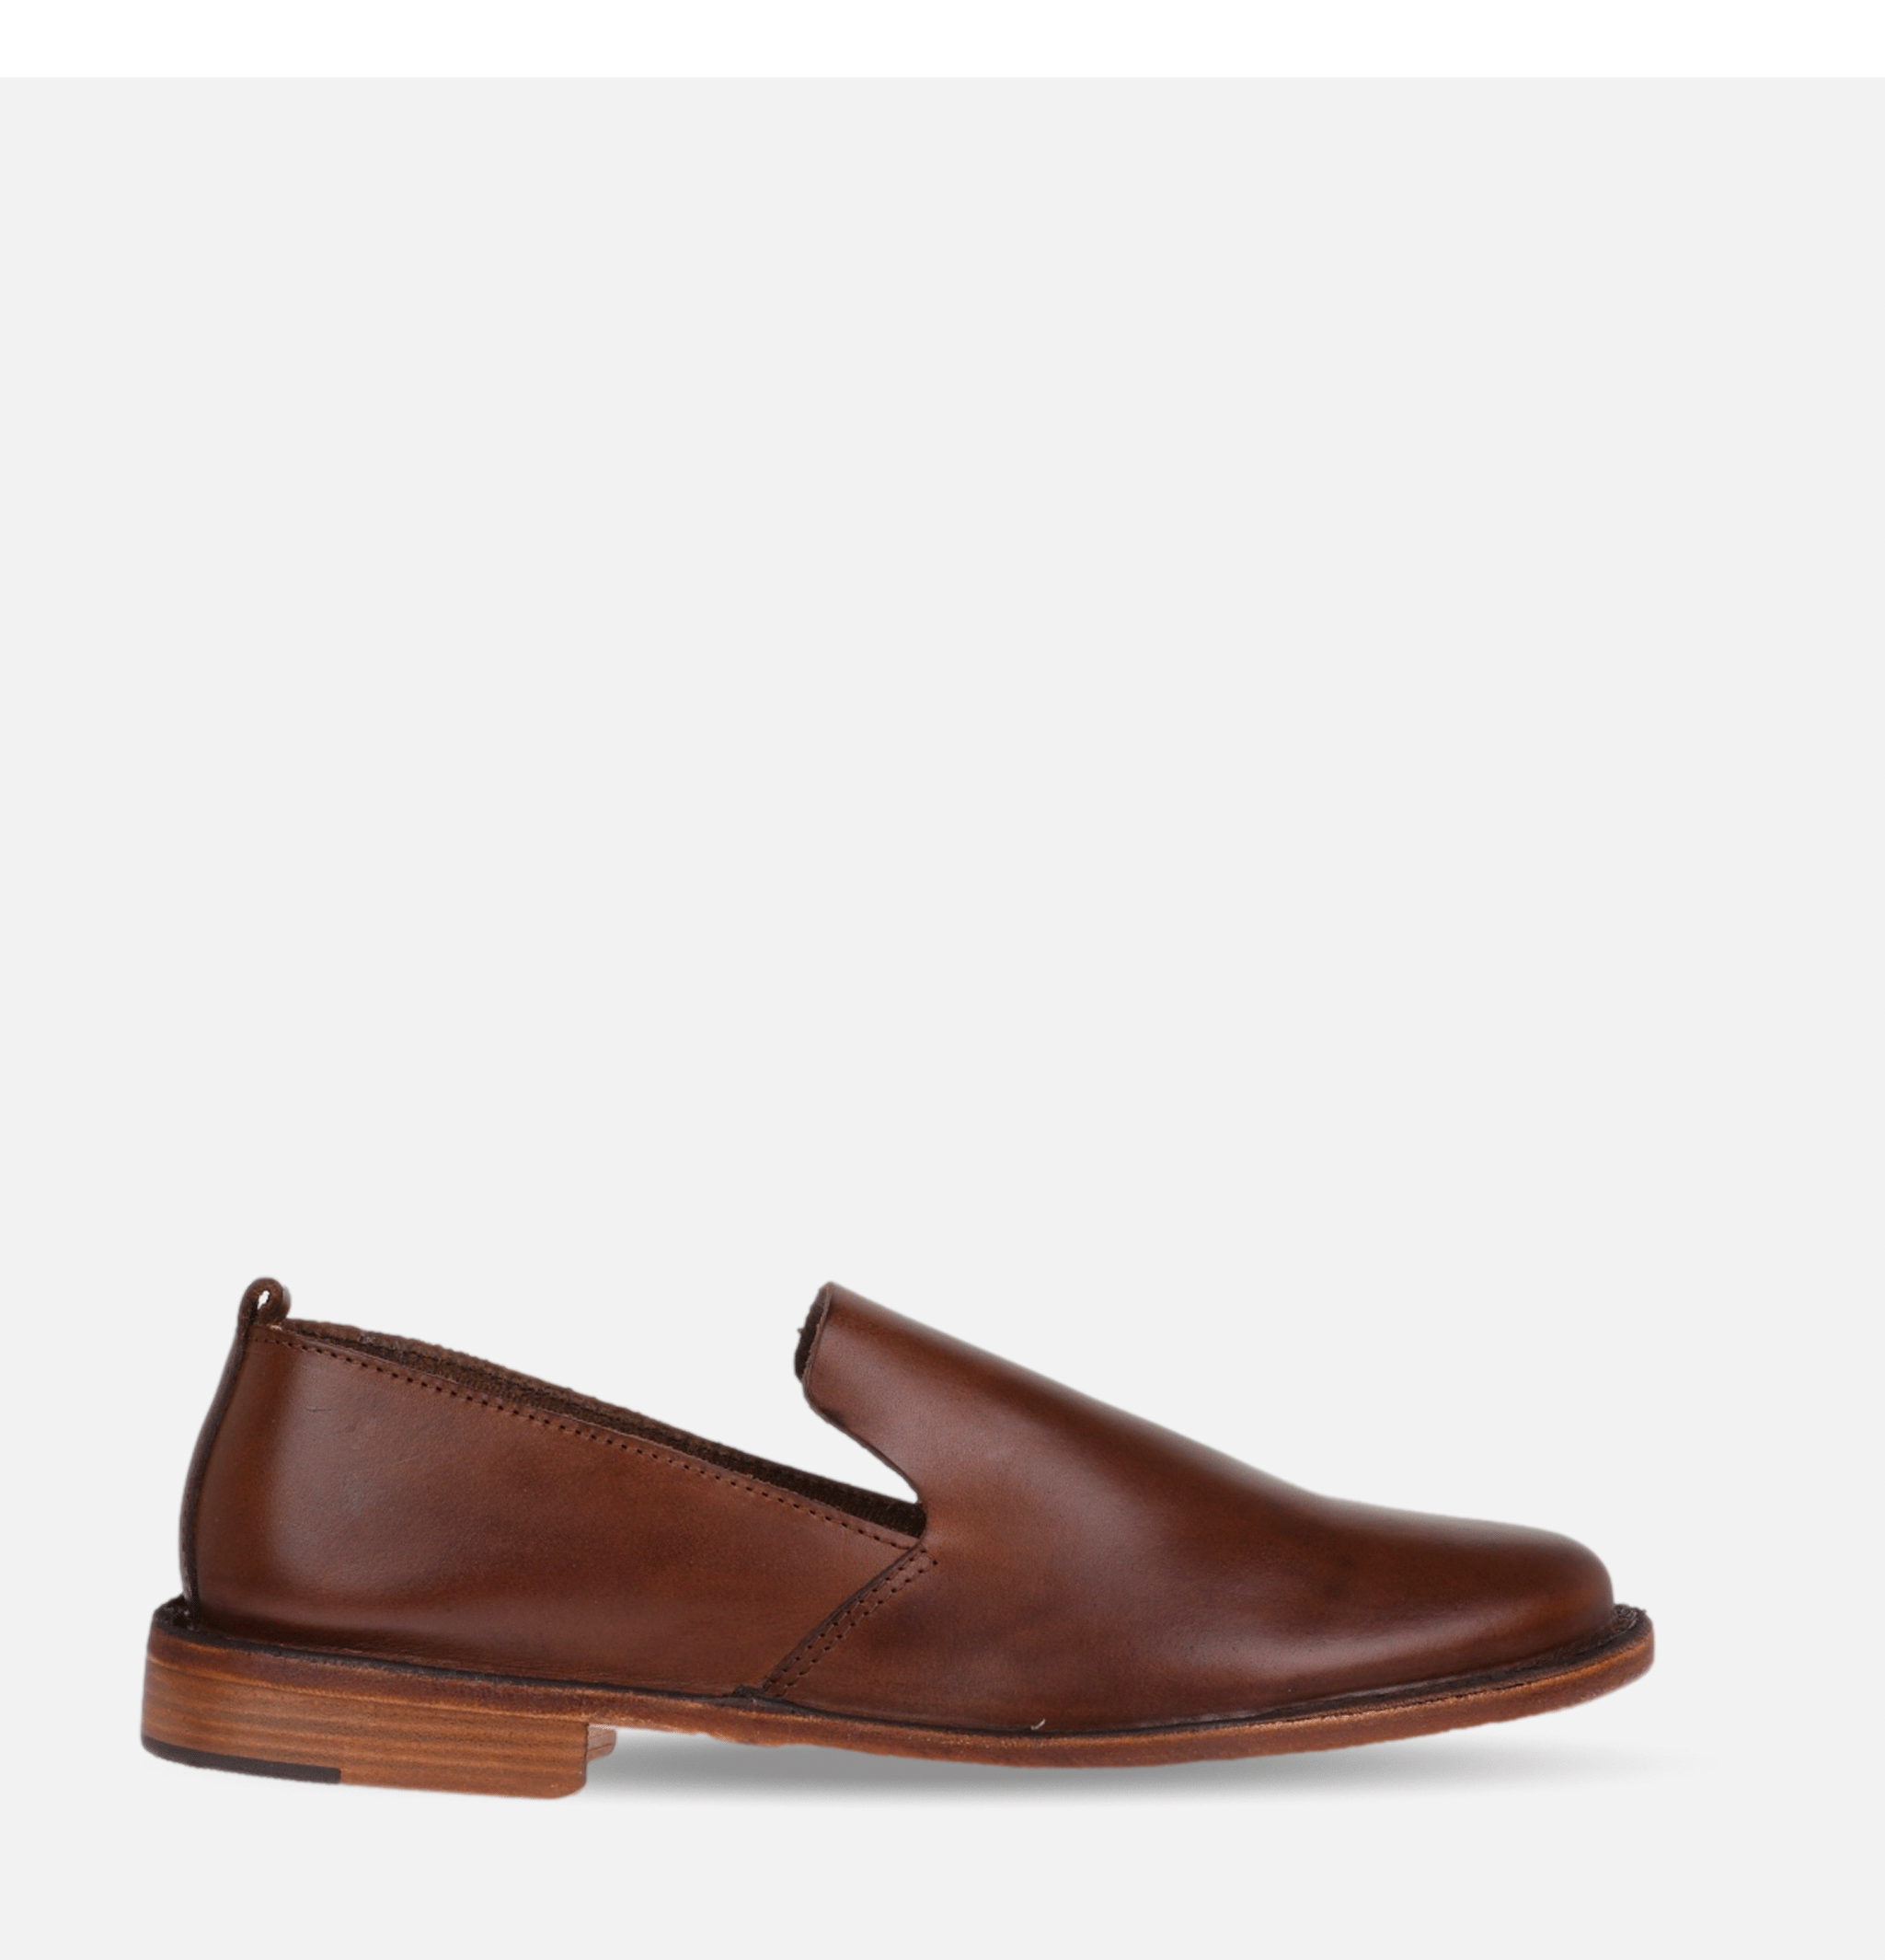 Puntoflex Shoes Brown